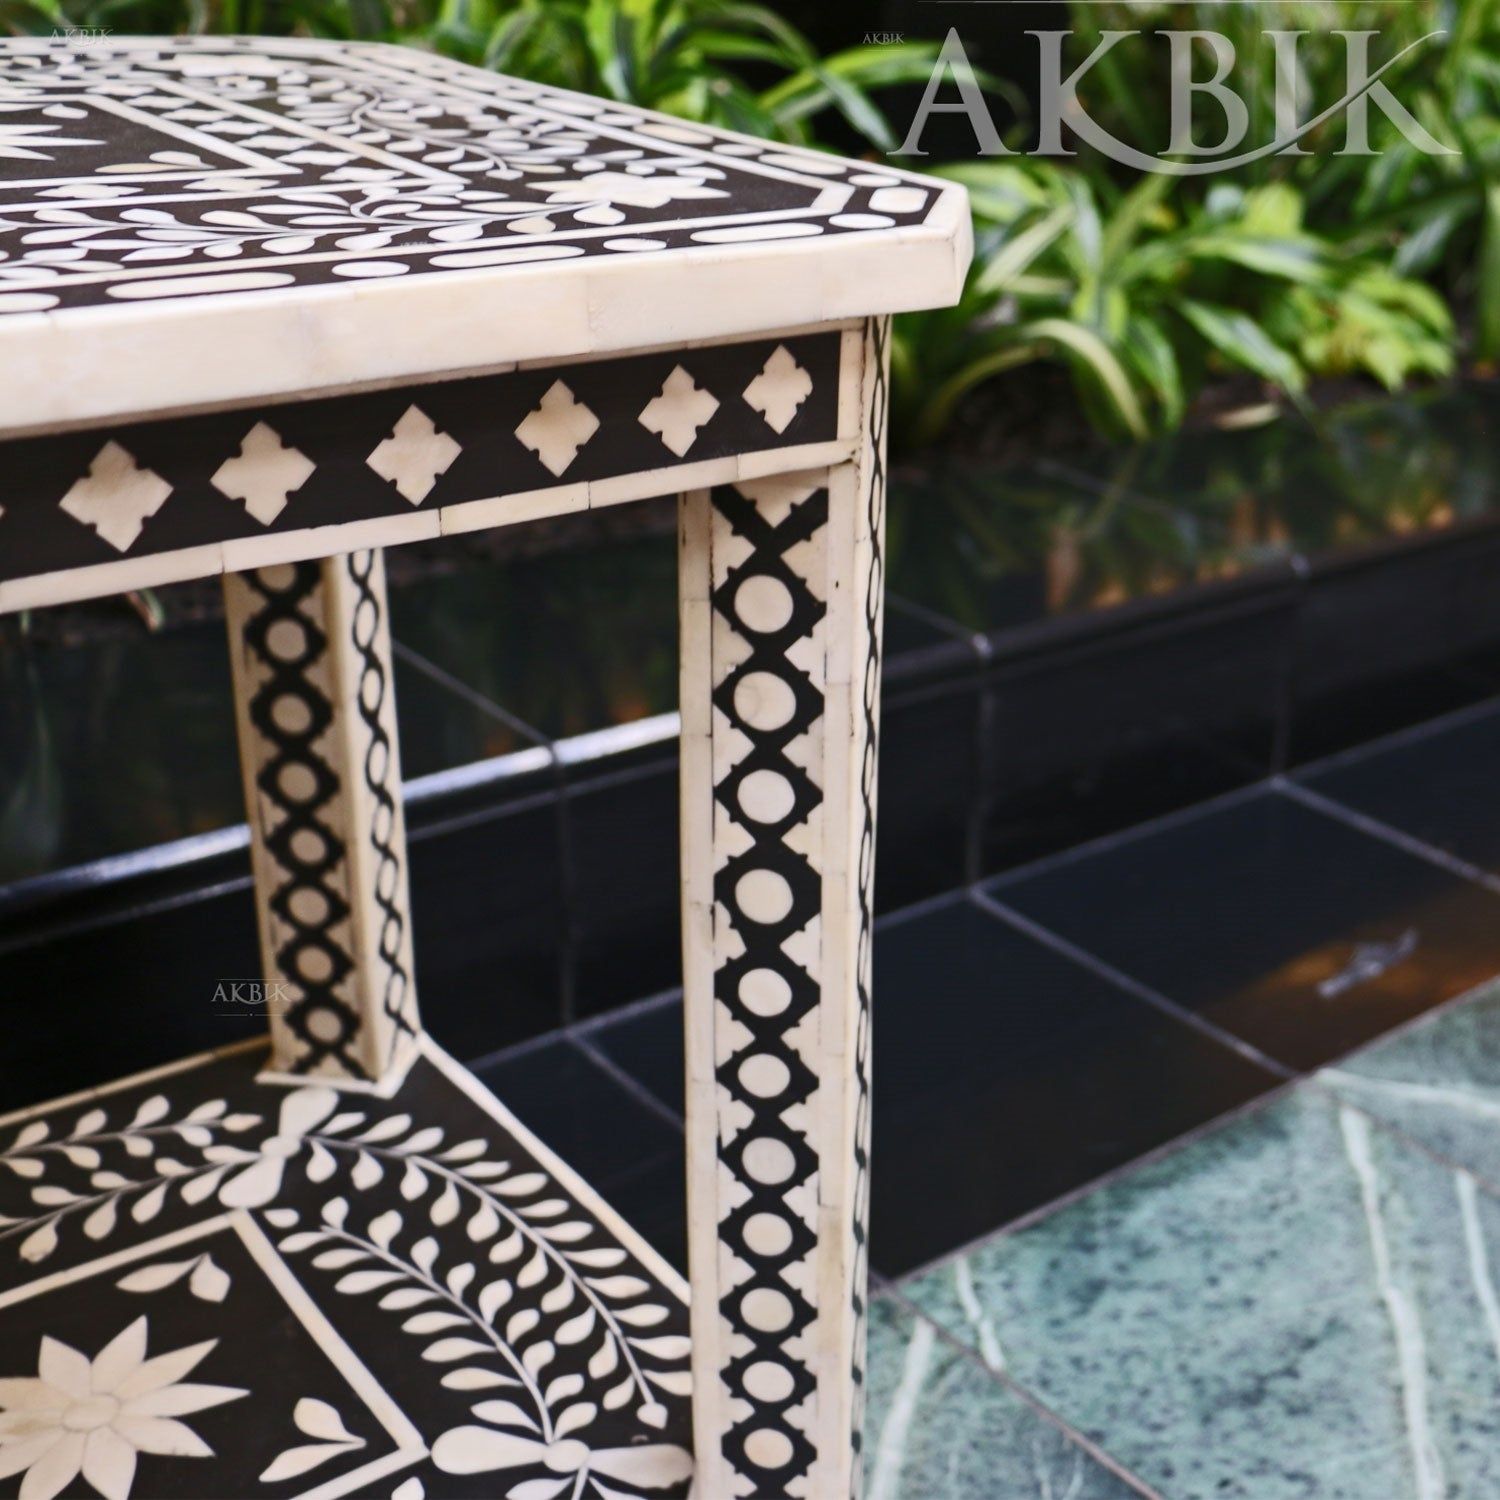 NORTH STAR SIDE TABLE - AKBIK Furniture & Design